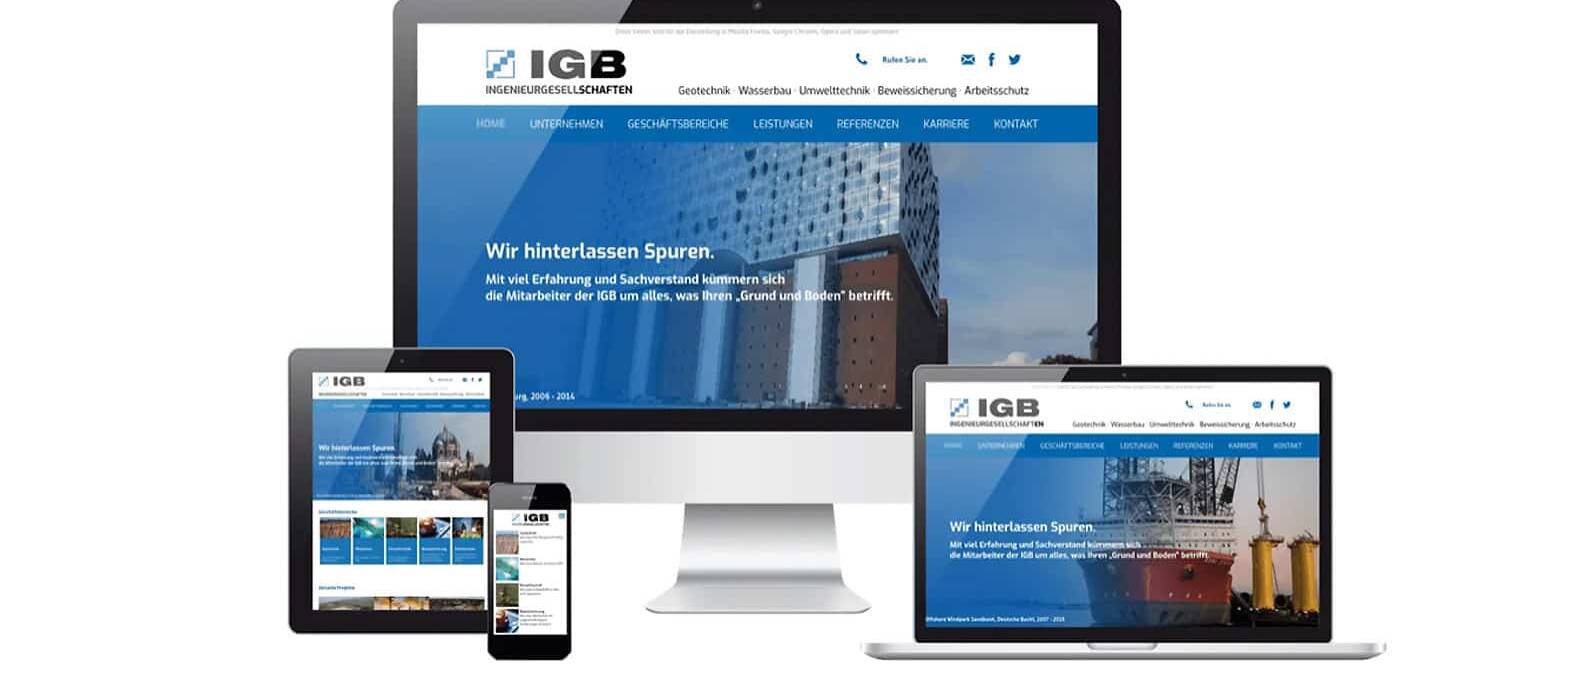 Responsive Webdesign Mockup der Website IGB